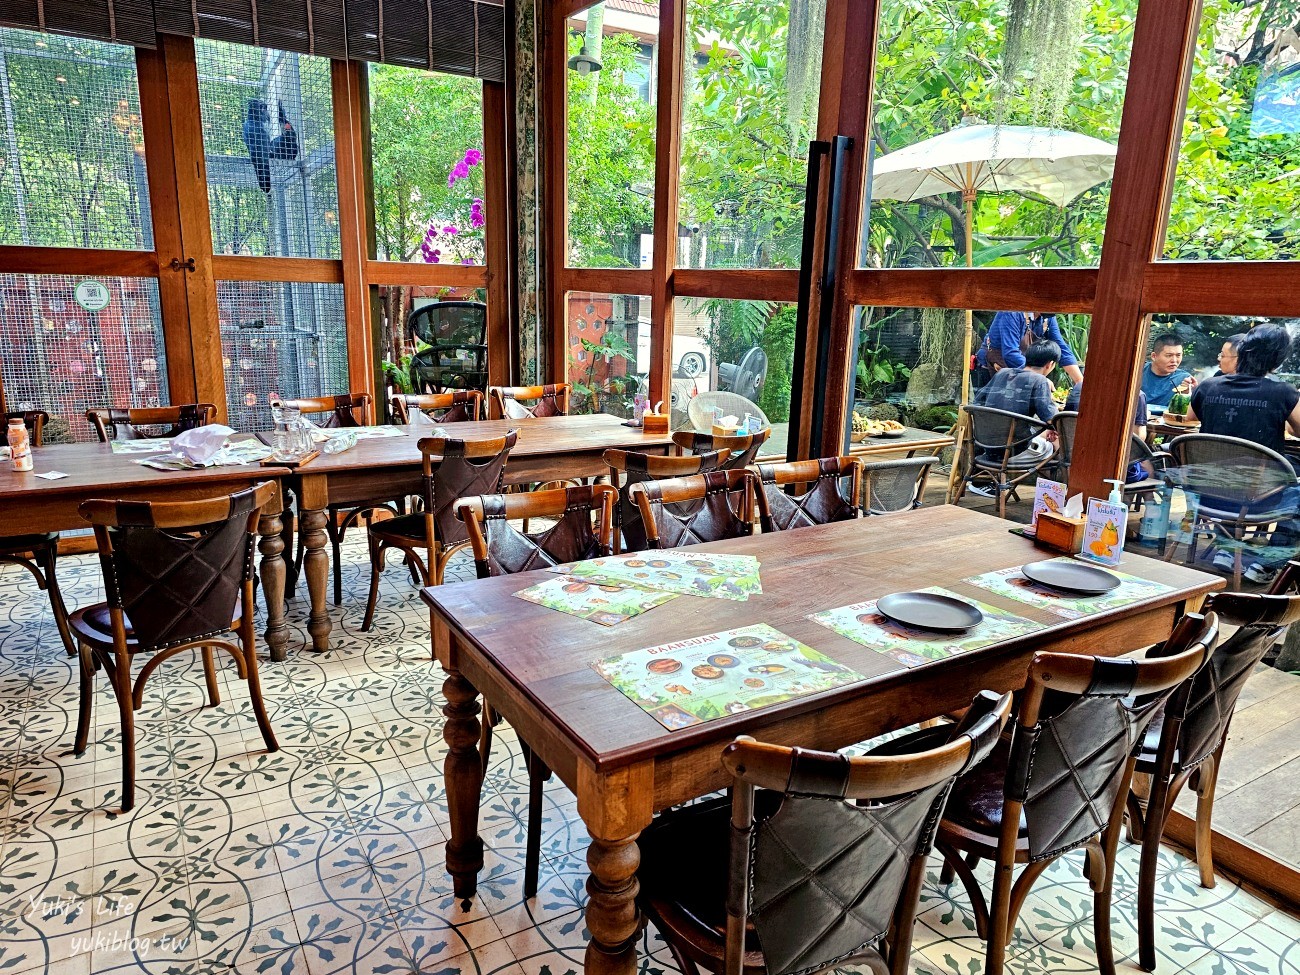 曼谷網美咖啡廳【Baan Suan Sathon】超浪漫森林系雨林風格~來當仙女 - yukiblog.tw